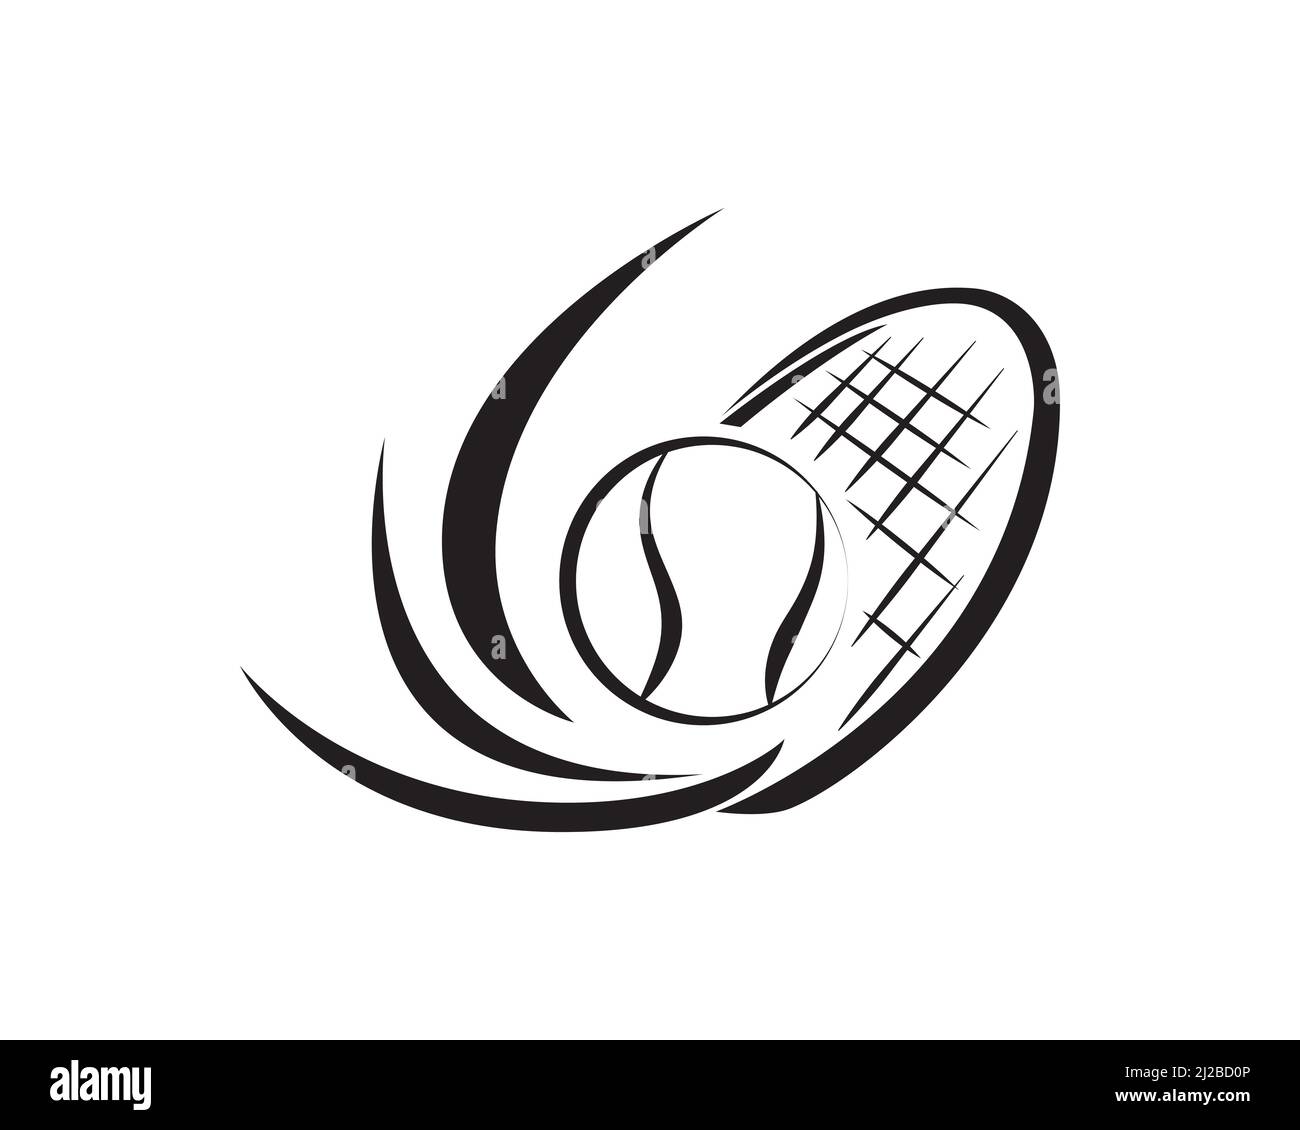 Pelota de tenis y silueta de raqueta Ilustración del Vector